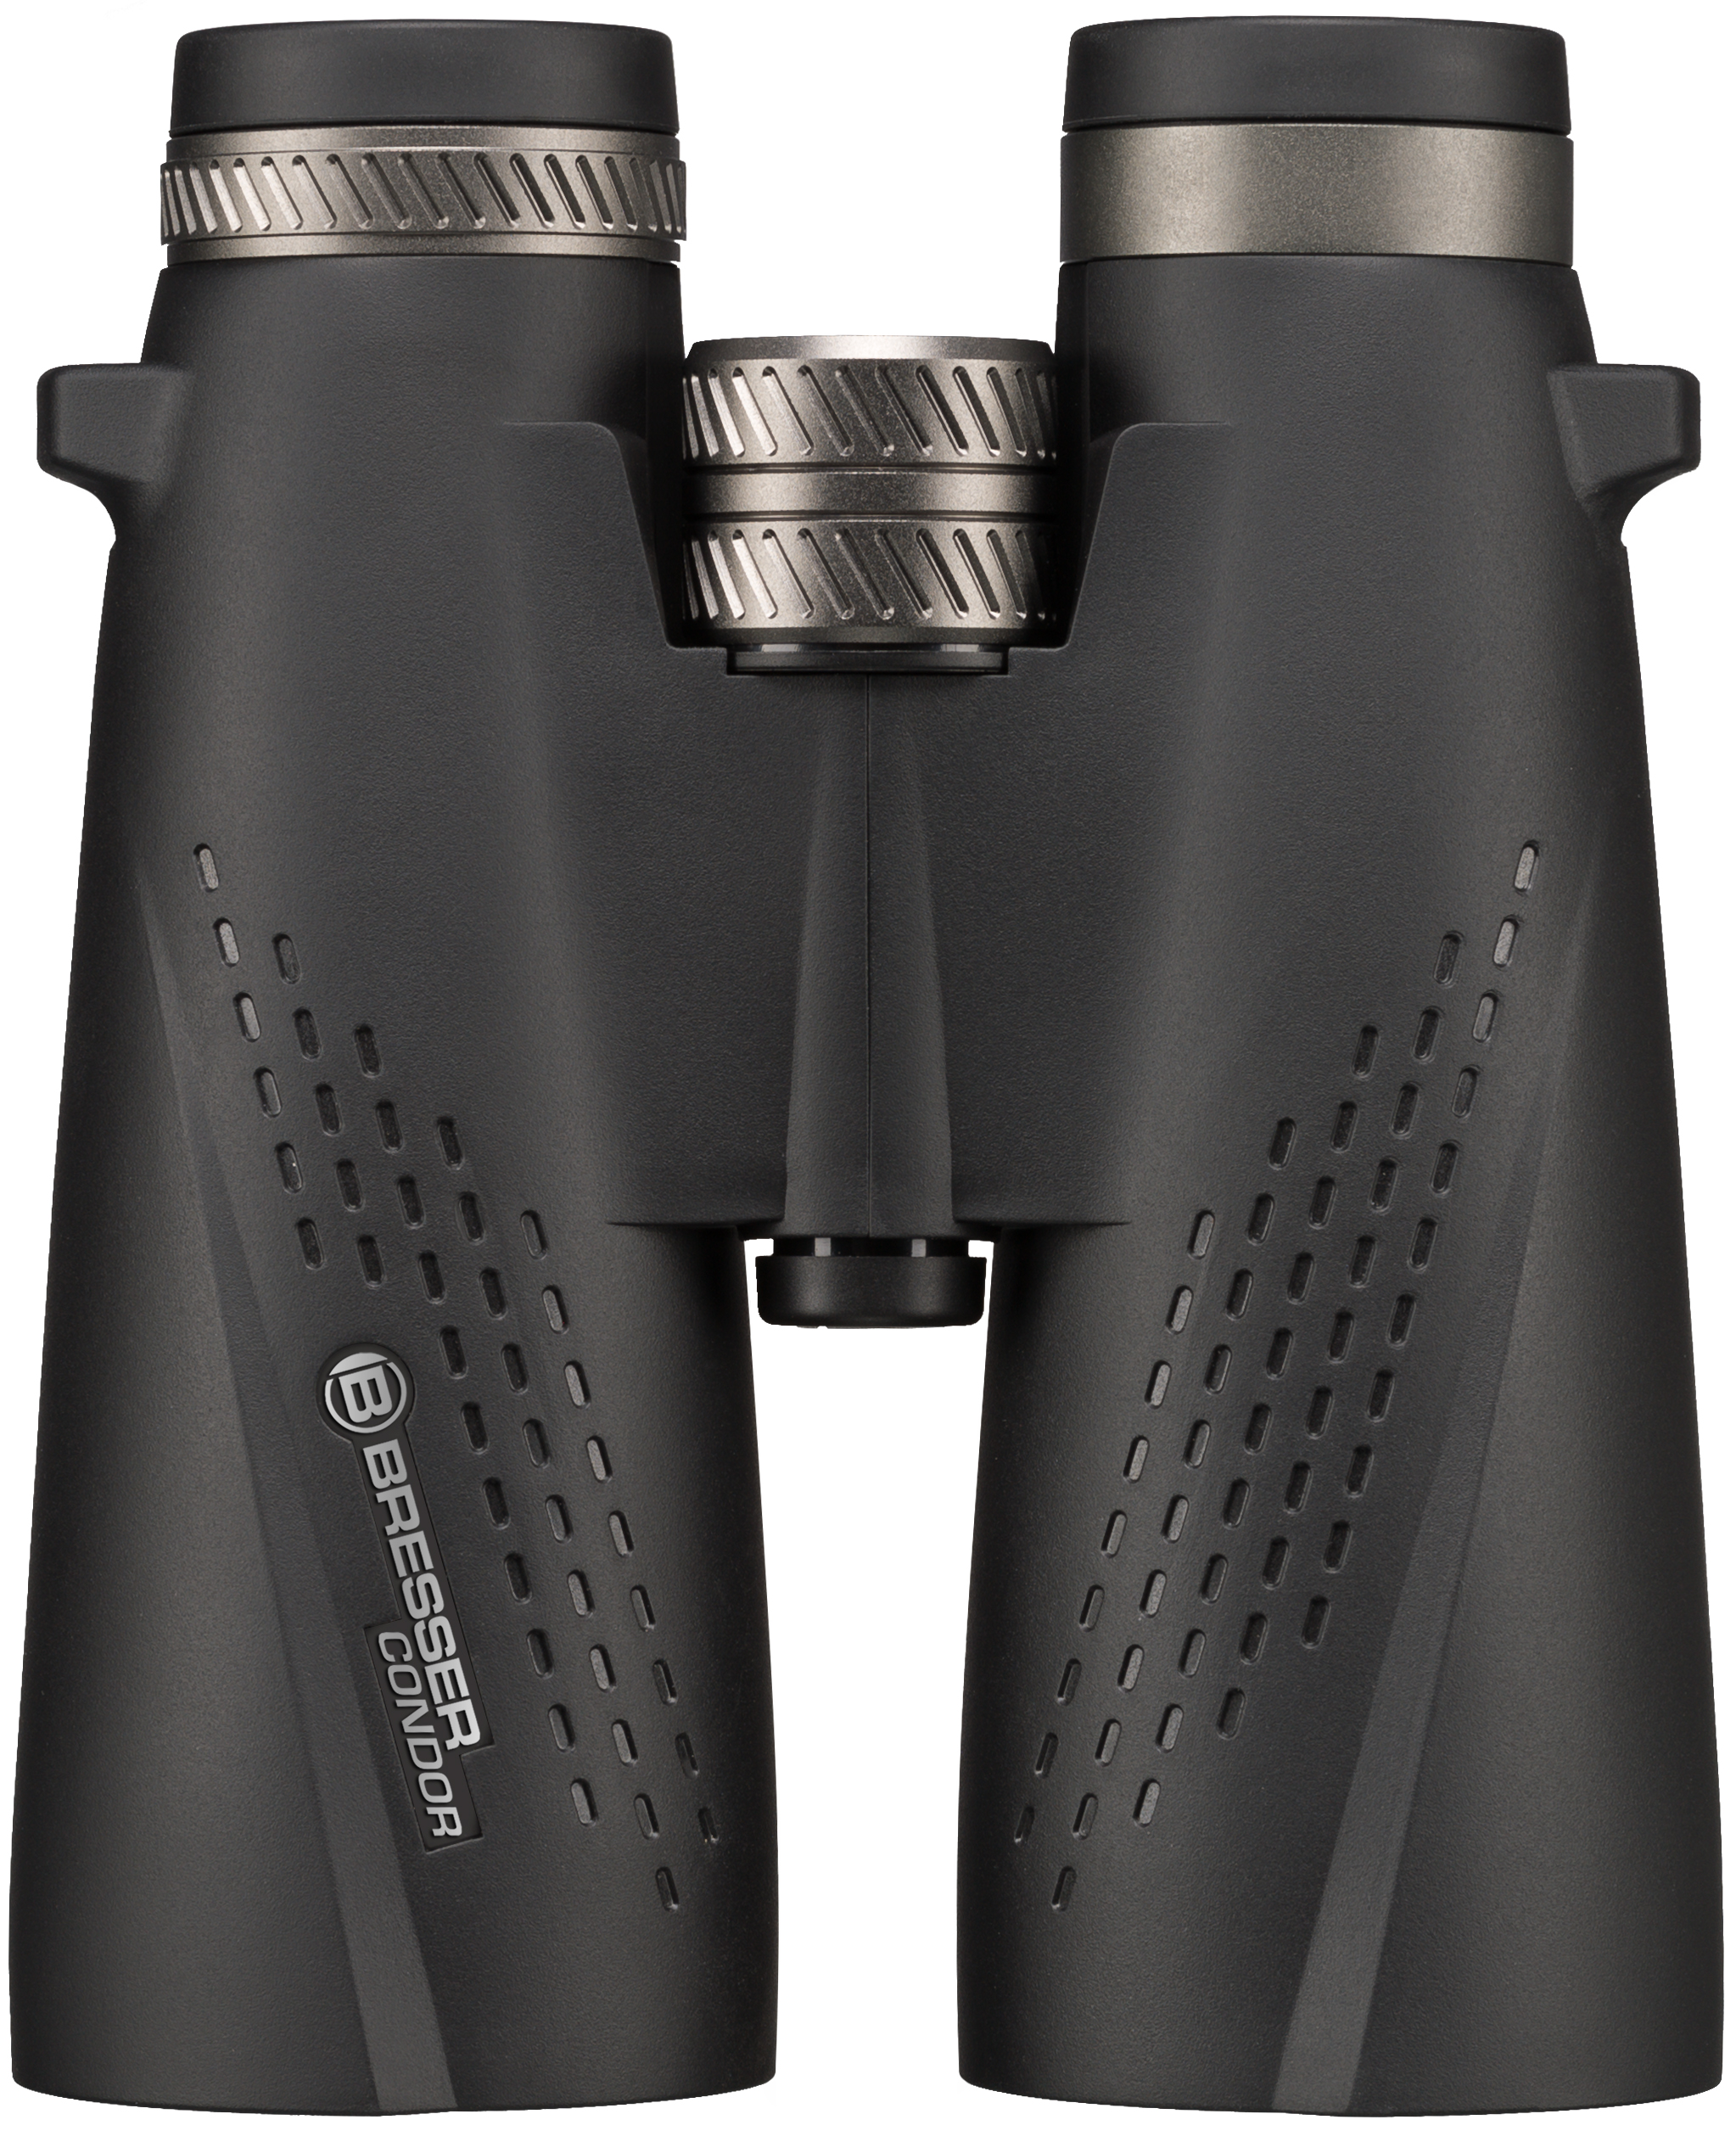 BRESSER Condor 8x56 Binoculars with UR Coating